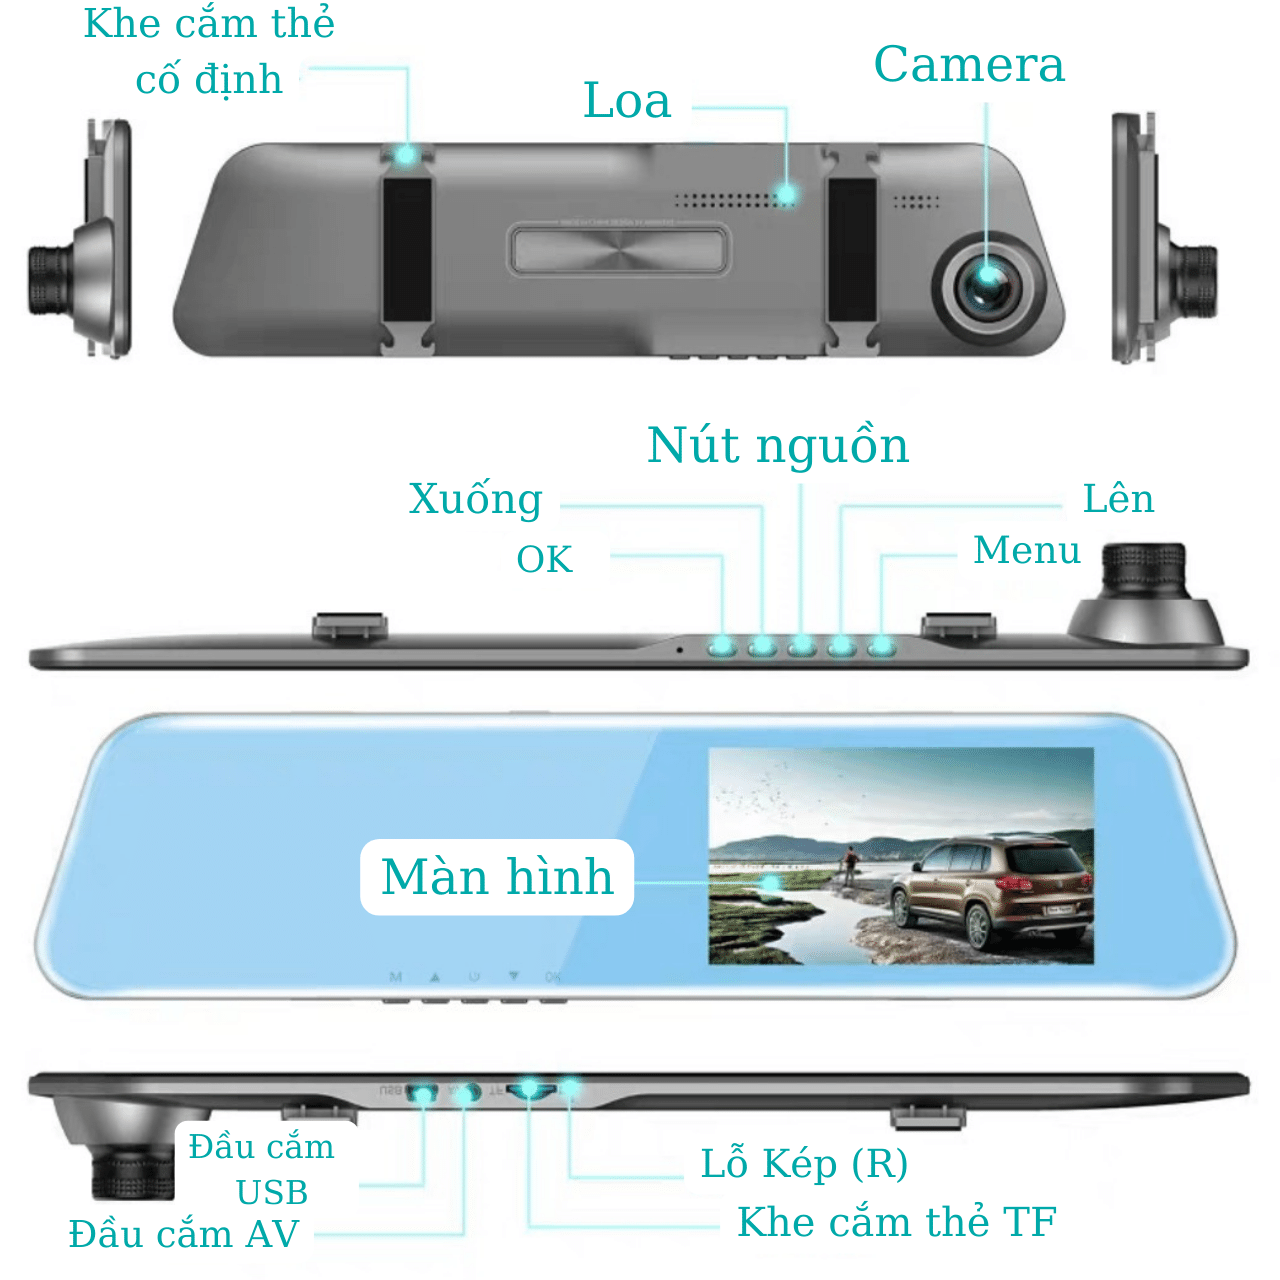 Camera Hình Trình Dạng Gương Màn Hình HD (Màn Hình 4.5in)